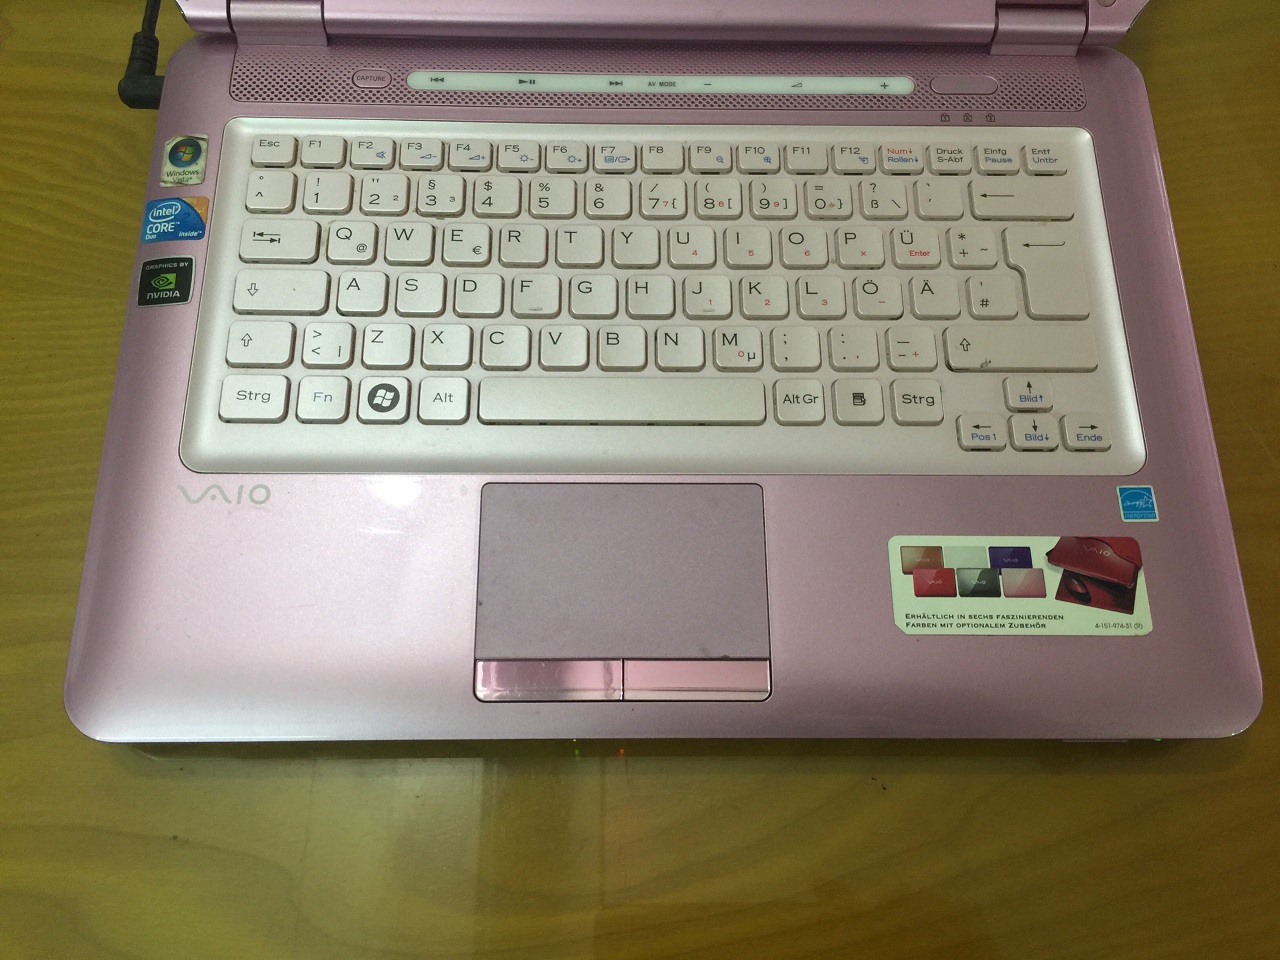 Sony vaio VGN-CS31S cũ màu hồng rất đẹp